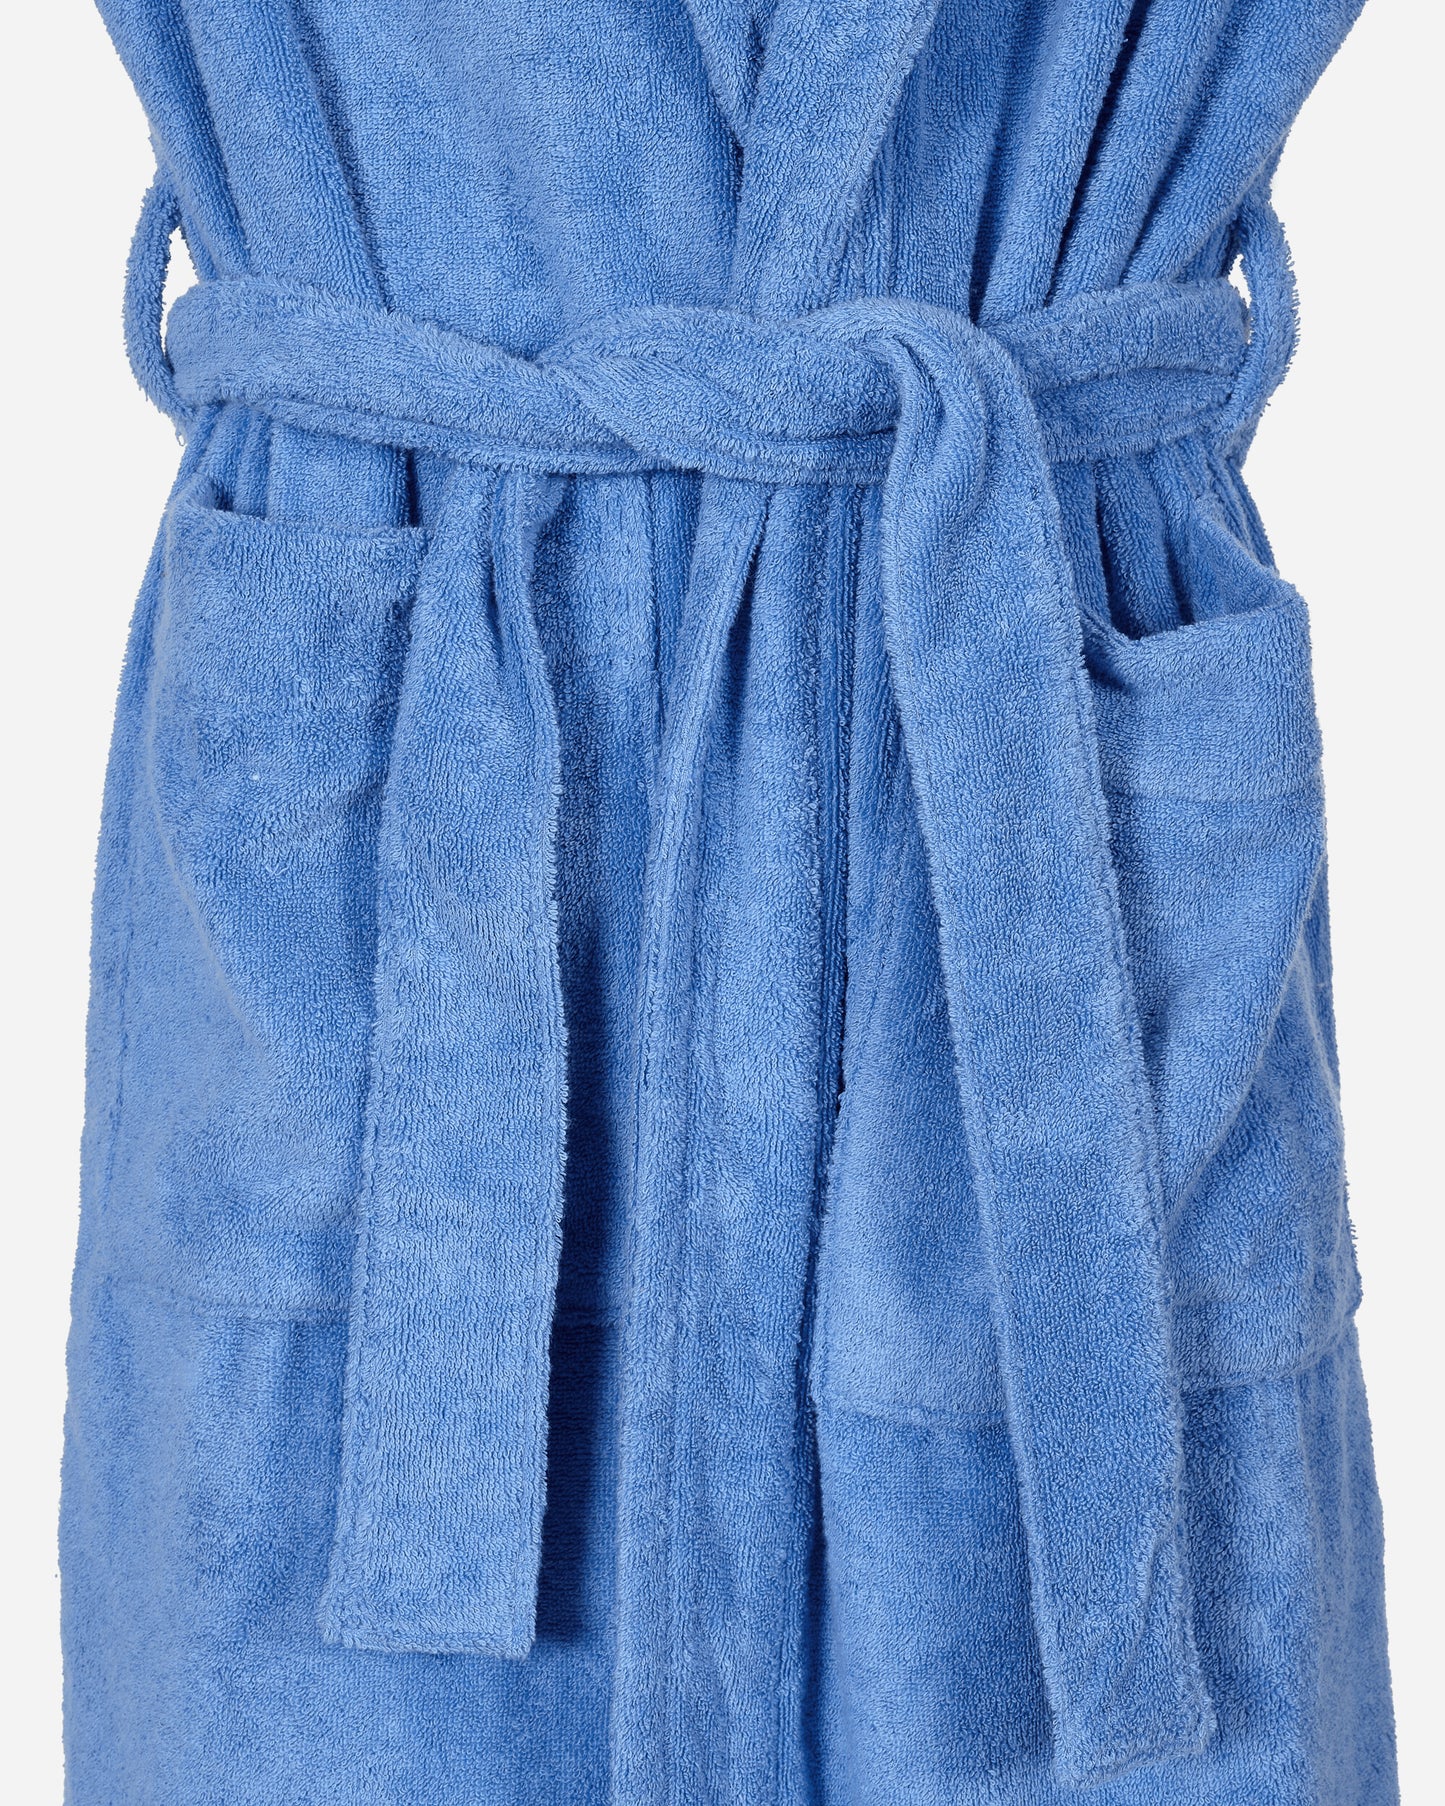 Tekla Hooded Bathrobe Clear Blue Textile Bathrobes BT CL